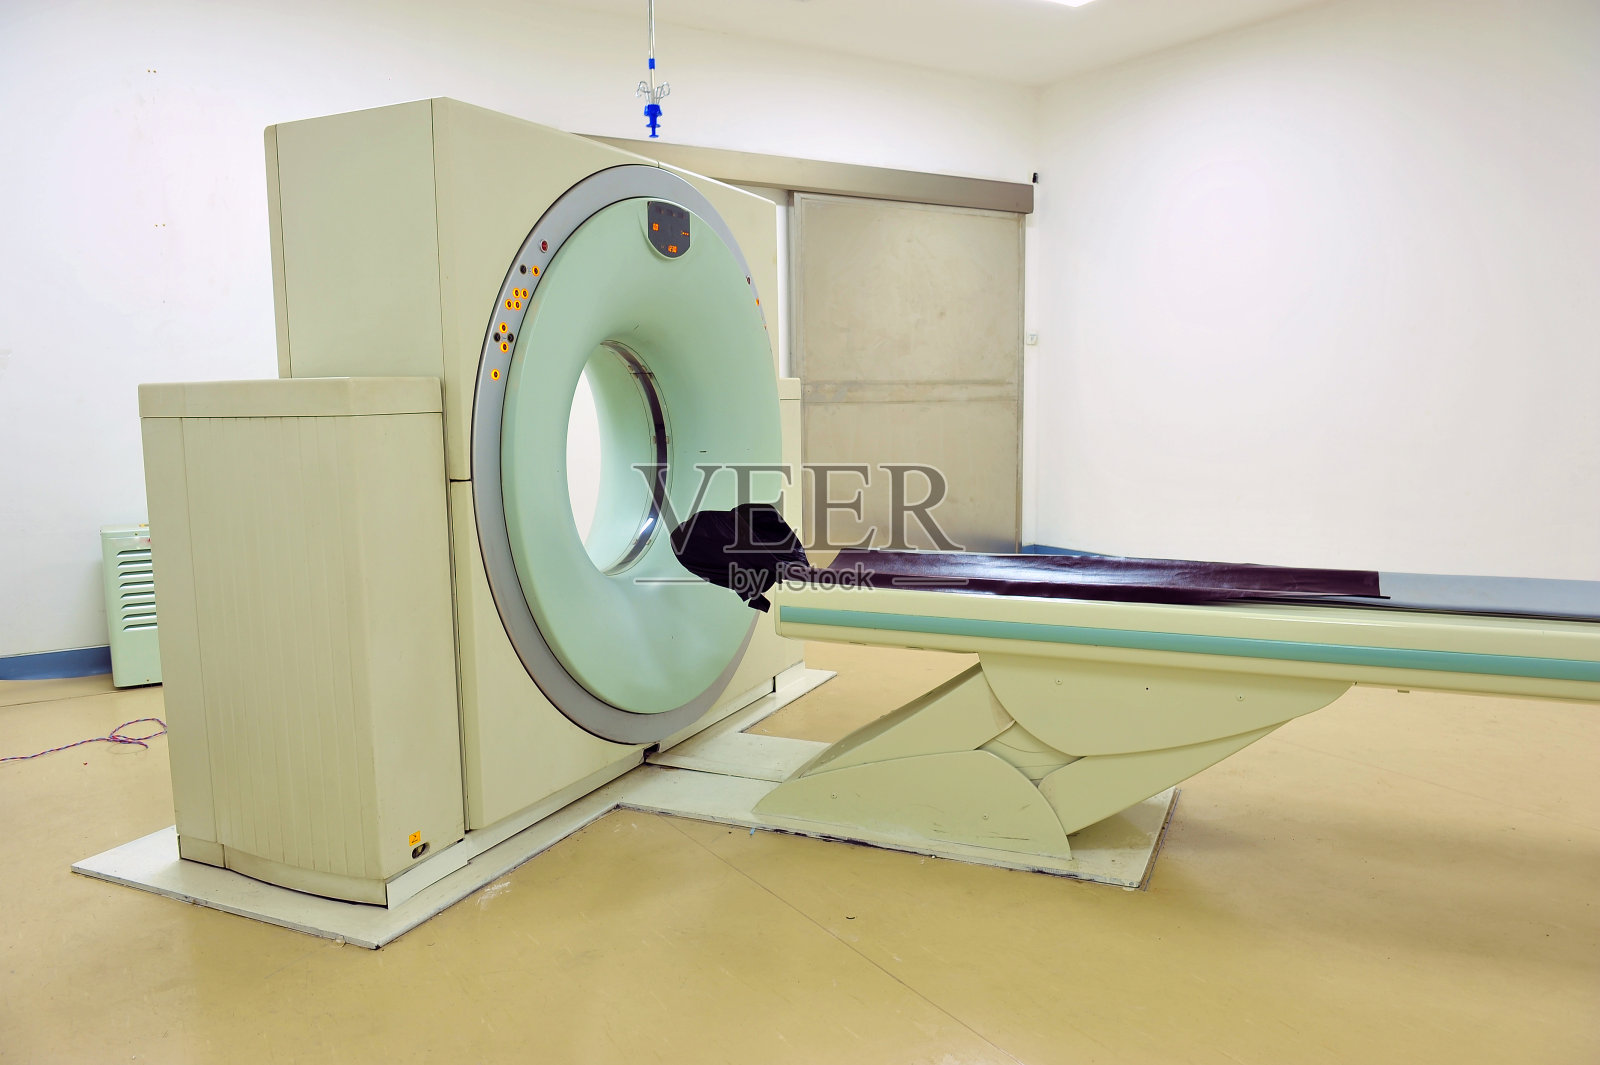 CT(计算机断层扫描)扫描器在医院实验室照片摄影图片